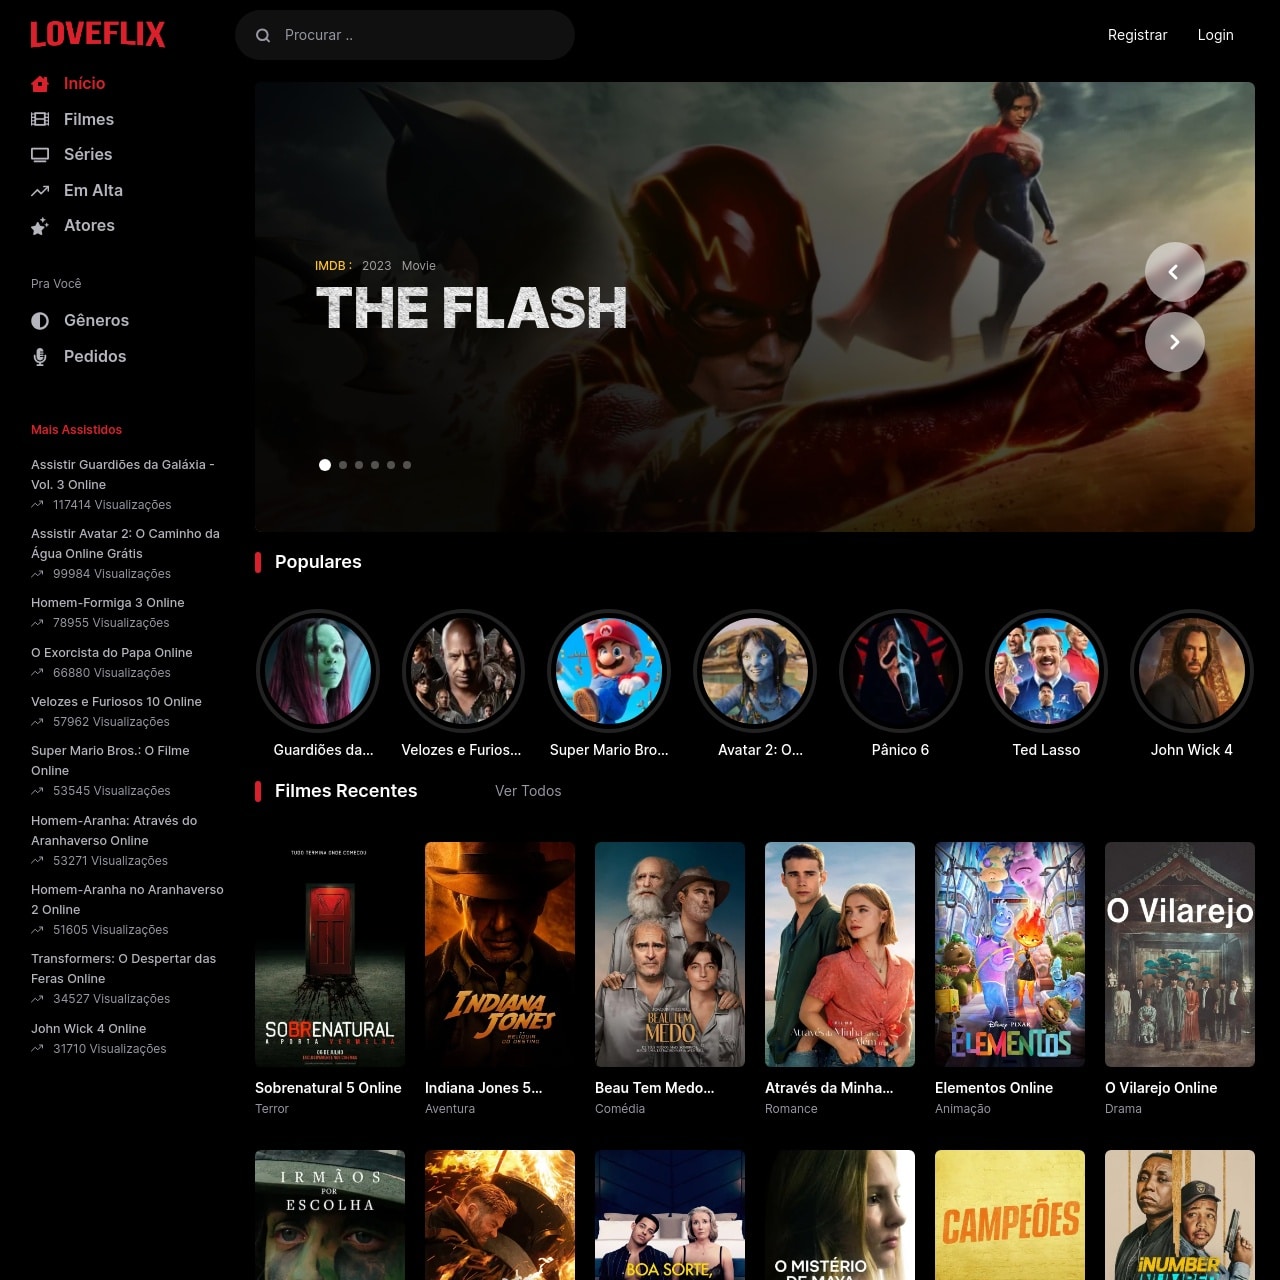 GRÁTIS: Assistir filmes e séries Online Grátis na Netflix